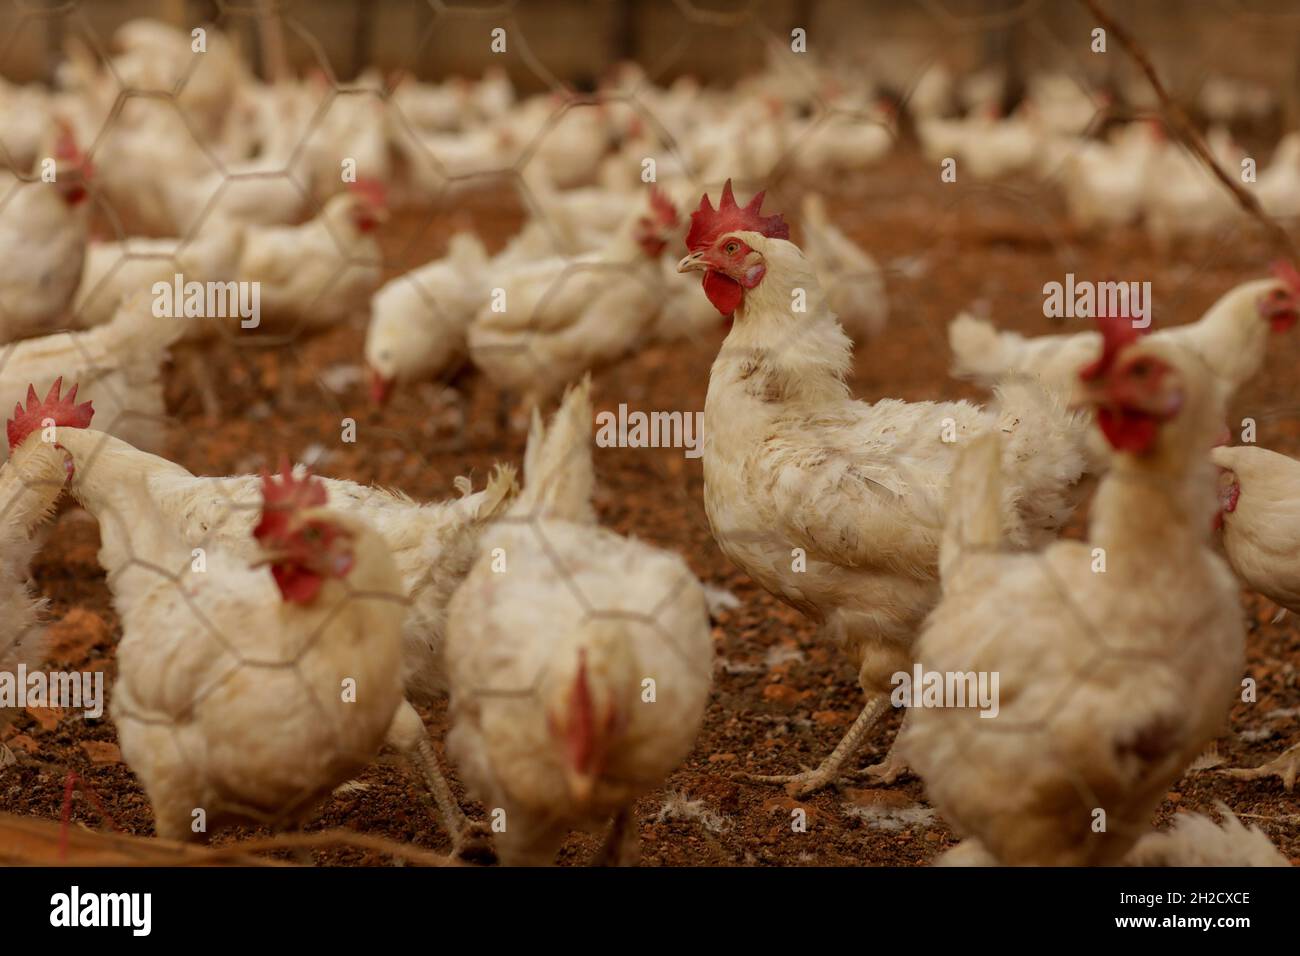 17 octobre 2021, Gaziantep, Anatolie, Turquie : Gaziantep,Turquie.19 octobre 2021.Poules dans les fermes œGrand dans la ville de Gaziantep, dans le sud de la Turquie.La ferme reproduit du poulet ainsi que des moutons et des chèvres et produit un grand nombre d'oeufs à l'aire libre.Il cultive également des champignons et produit des fourrages pour animaux, et s'engage à protéger l'environnement et à assurer la durabilité.La ferme est un exemple d'intégration réussie des Syriens qui s'installent en Turquie après avoir fui le conflit dans leur pays d'origine (Credit image: © Muhammad ATA/IMAGESLIVE via ZUMA Press Wire) Banque D'Images